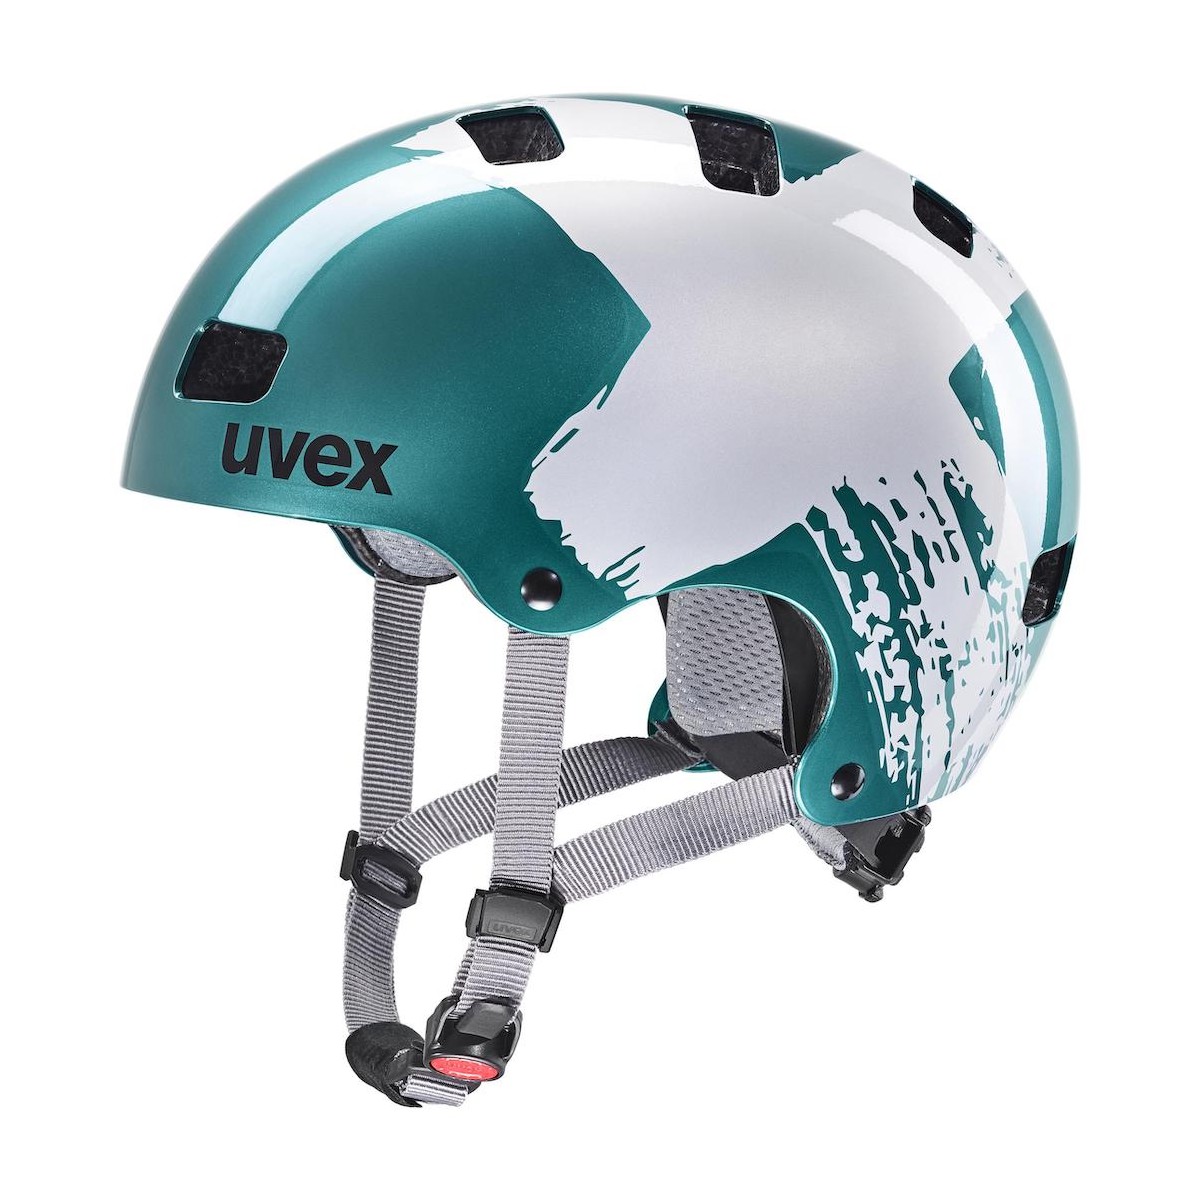 UVEX KID 3 helmet - teal/silver